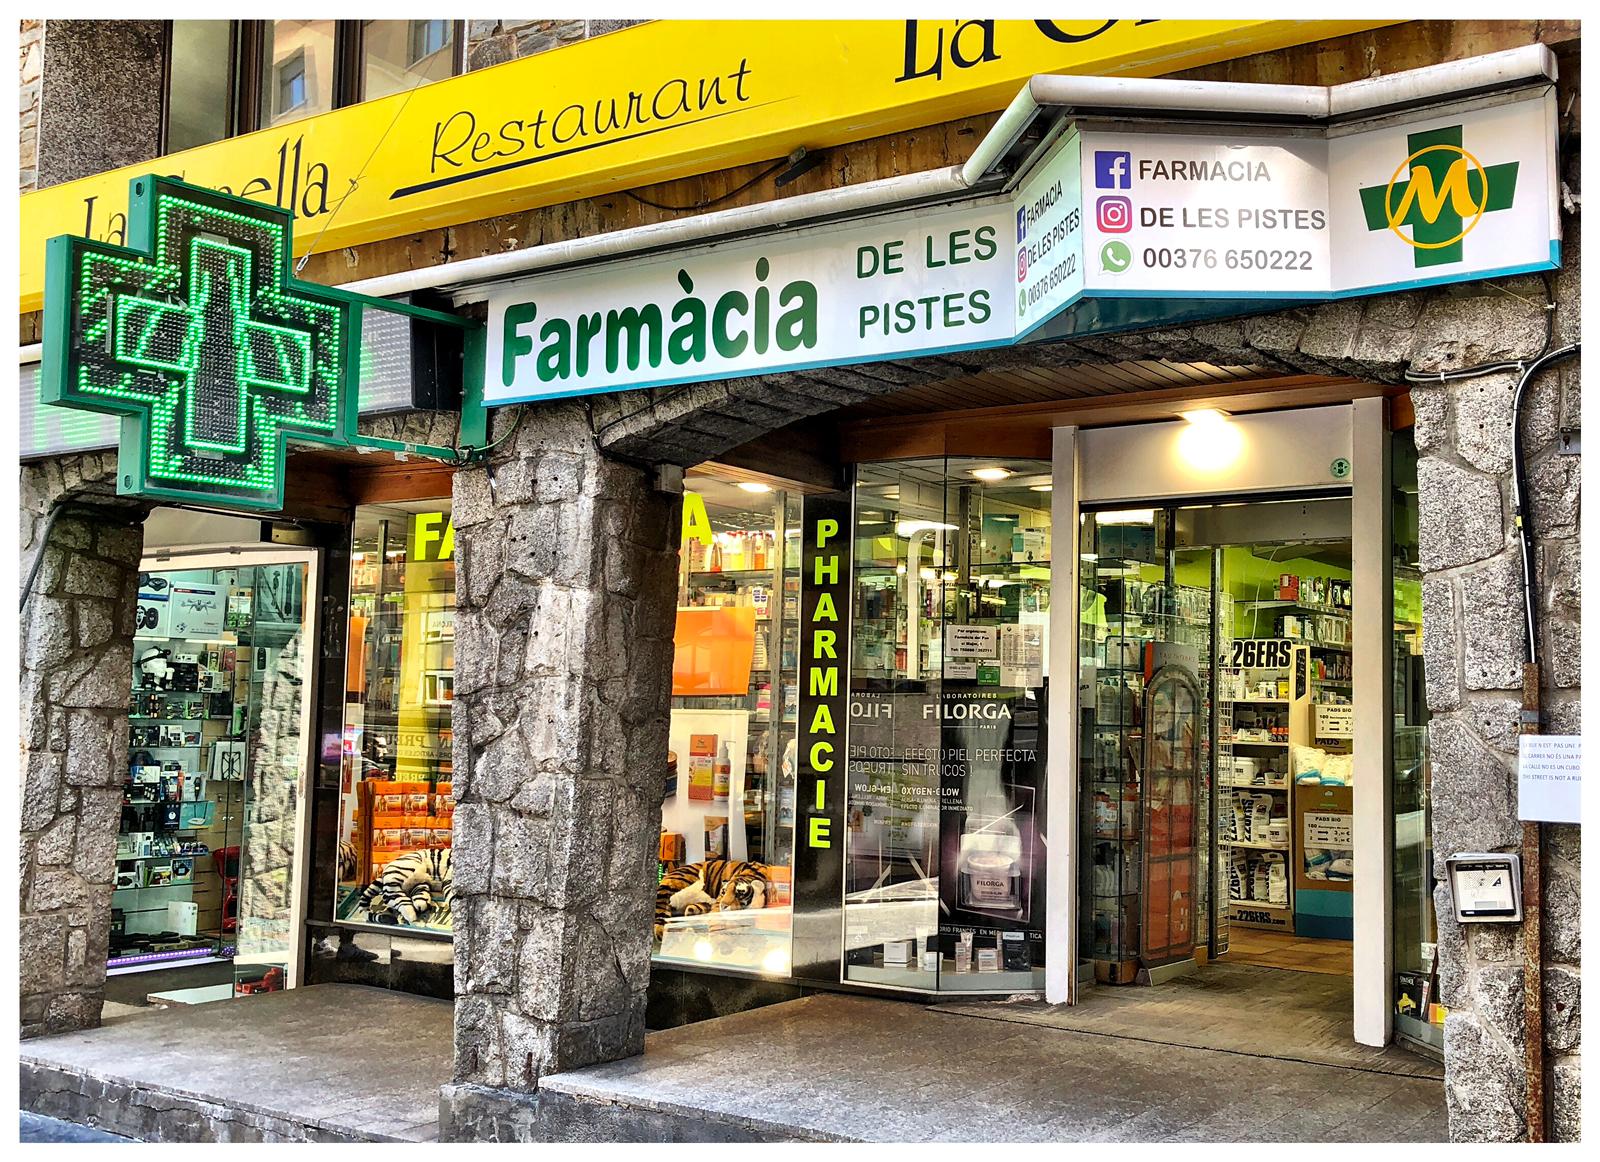 Farmacia de les Pistes Andorre Black Friday 2019 faites des économies rendez-vous le 29 novembre 2019 afin de bénéficier de nombreuses offres spéciales